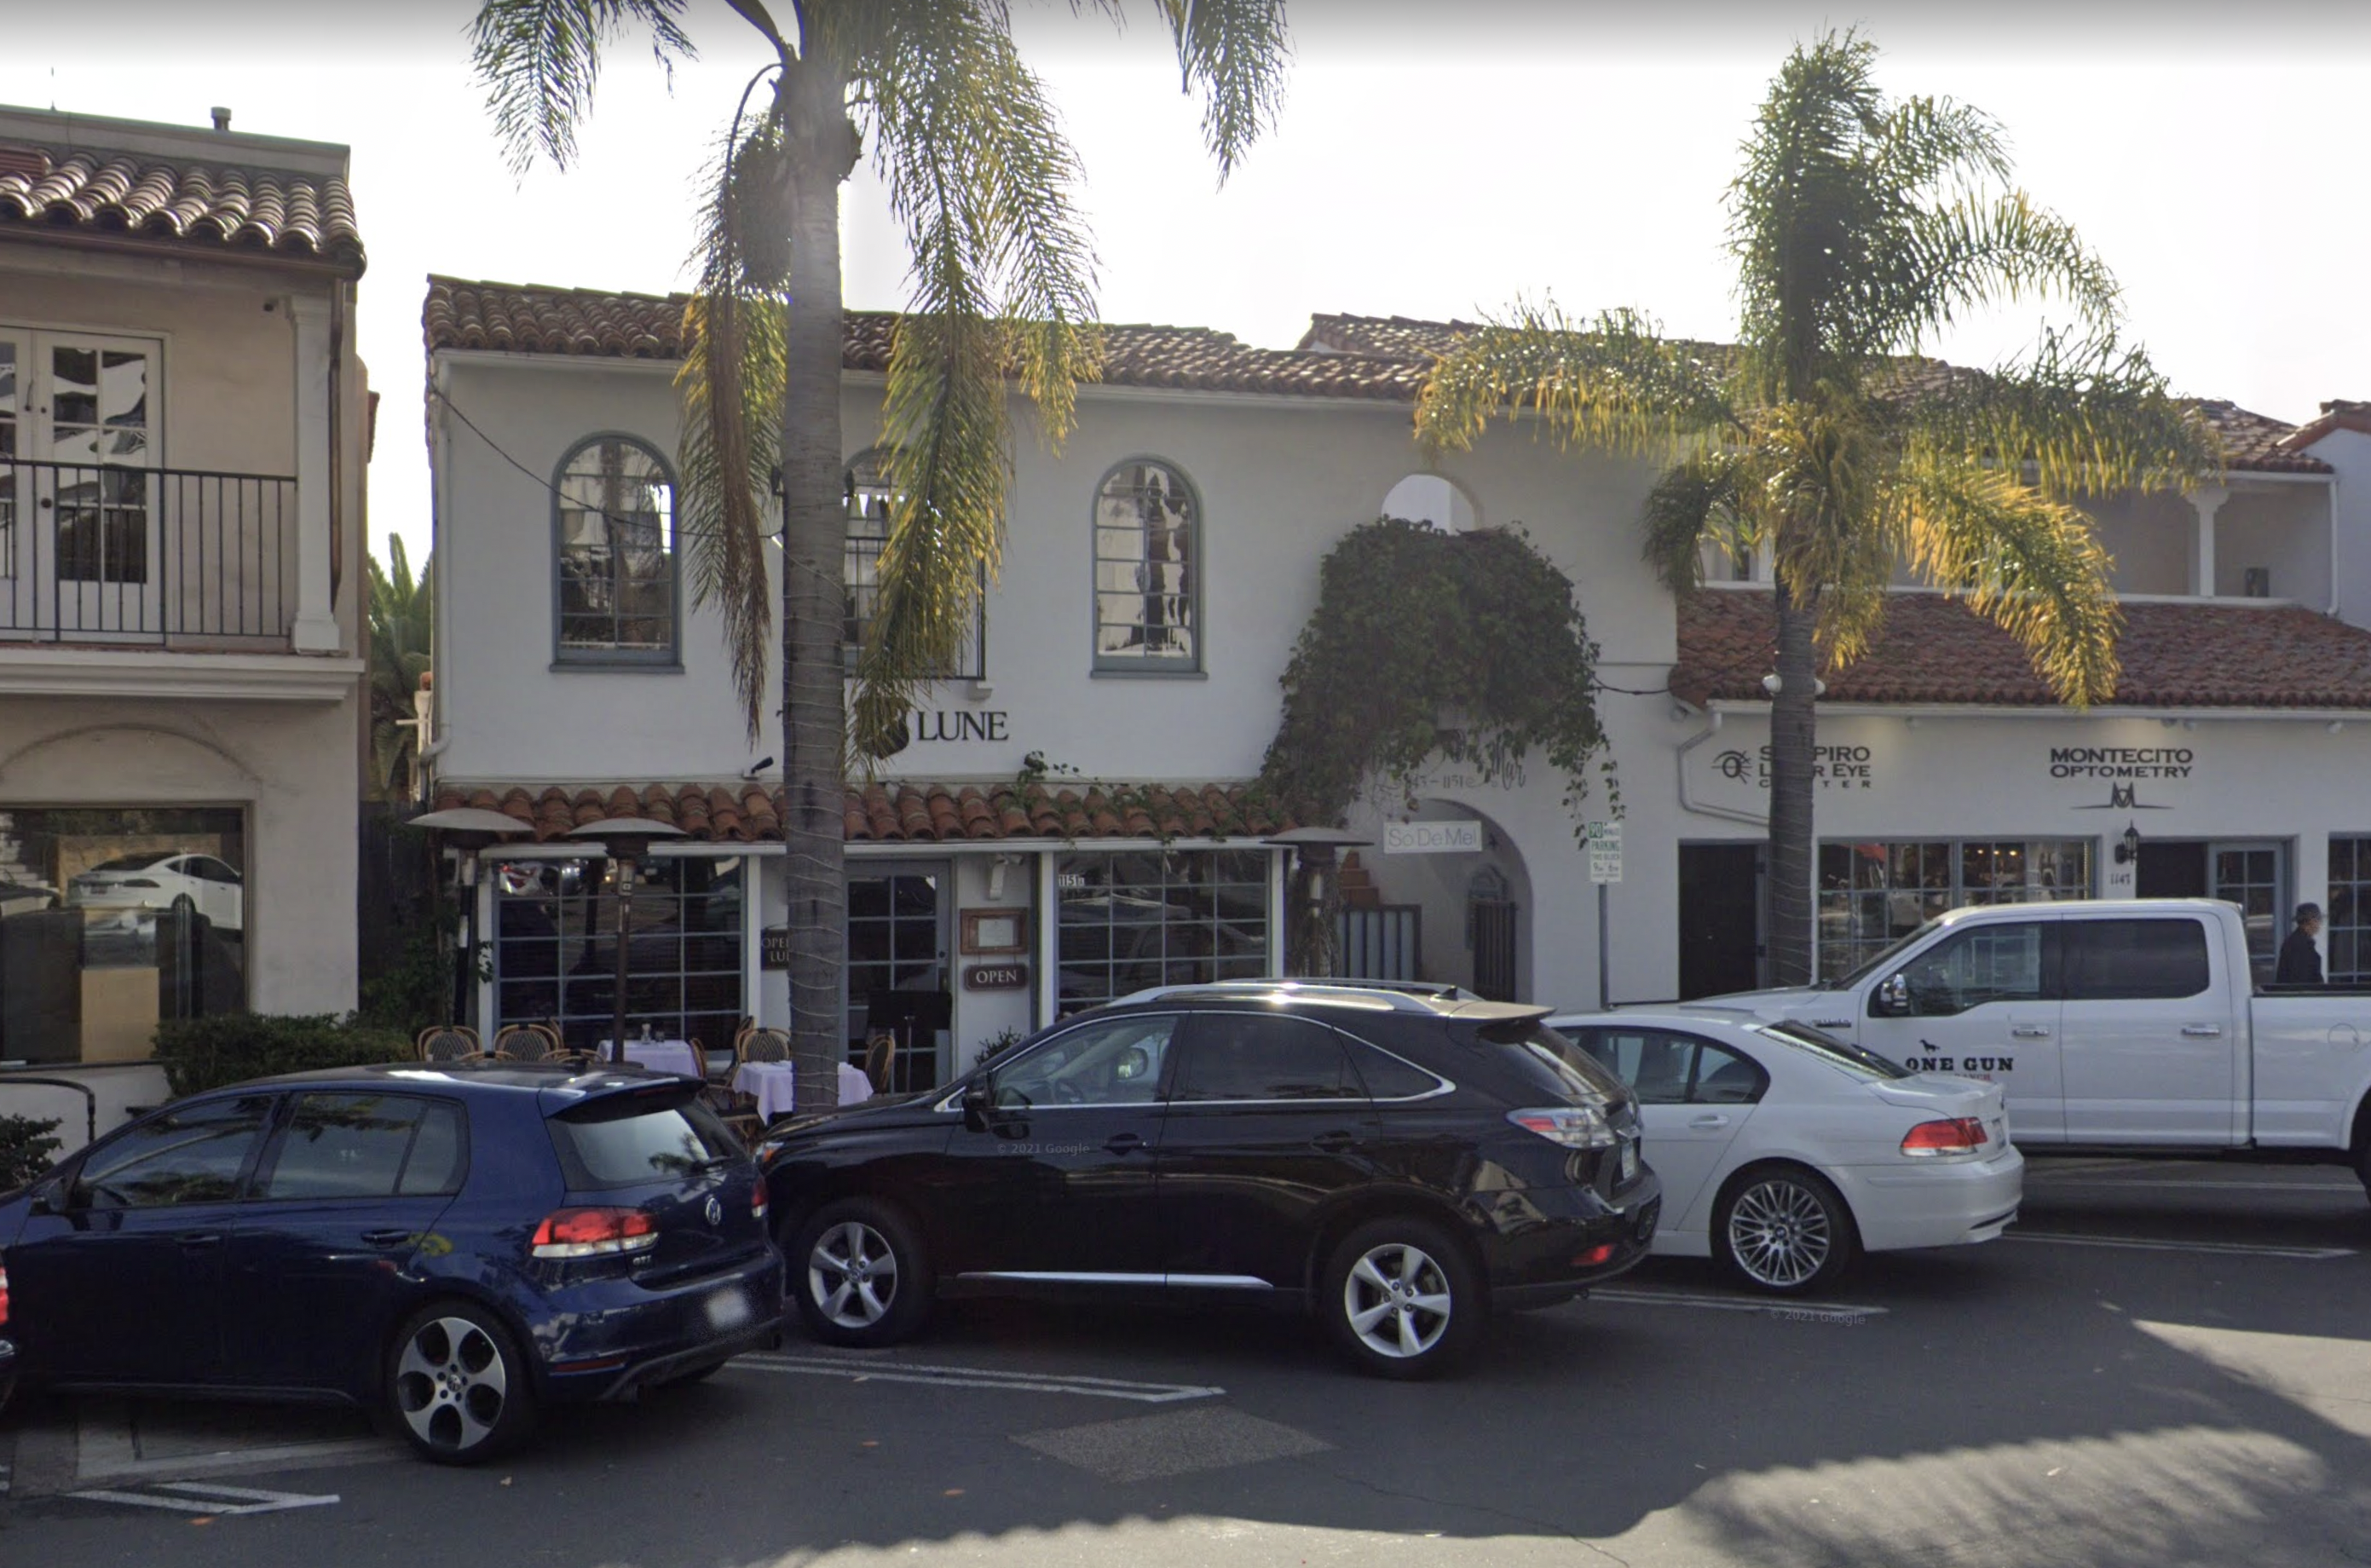 Pronto cenarían en Tre Lune, un restaurante popular en Montecito frecuentado por celebridades como Ellen DeGeneres.